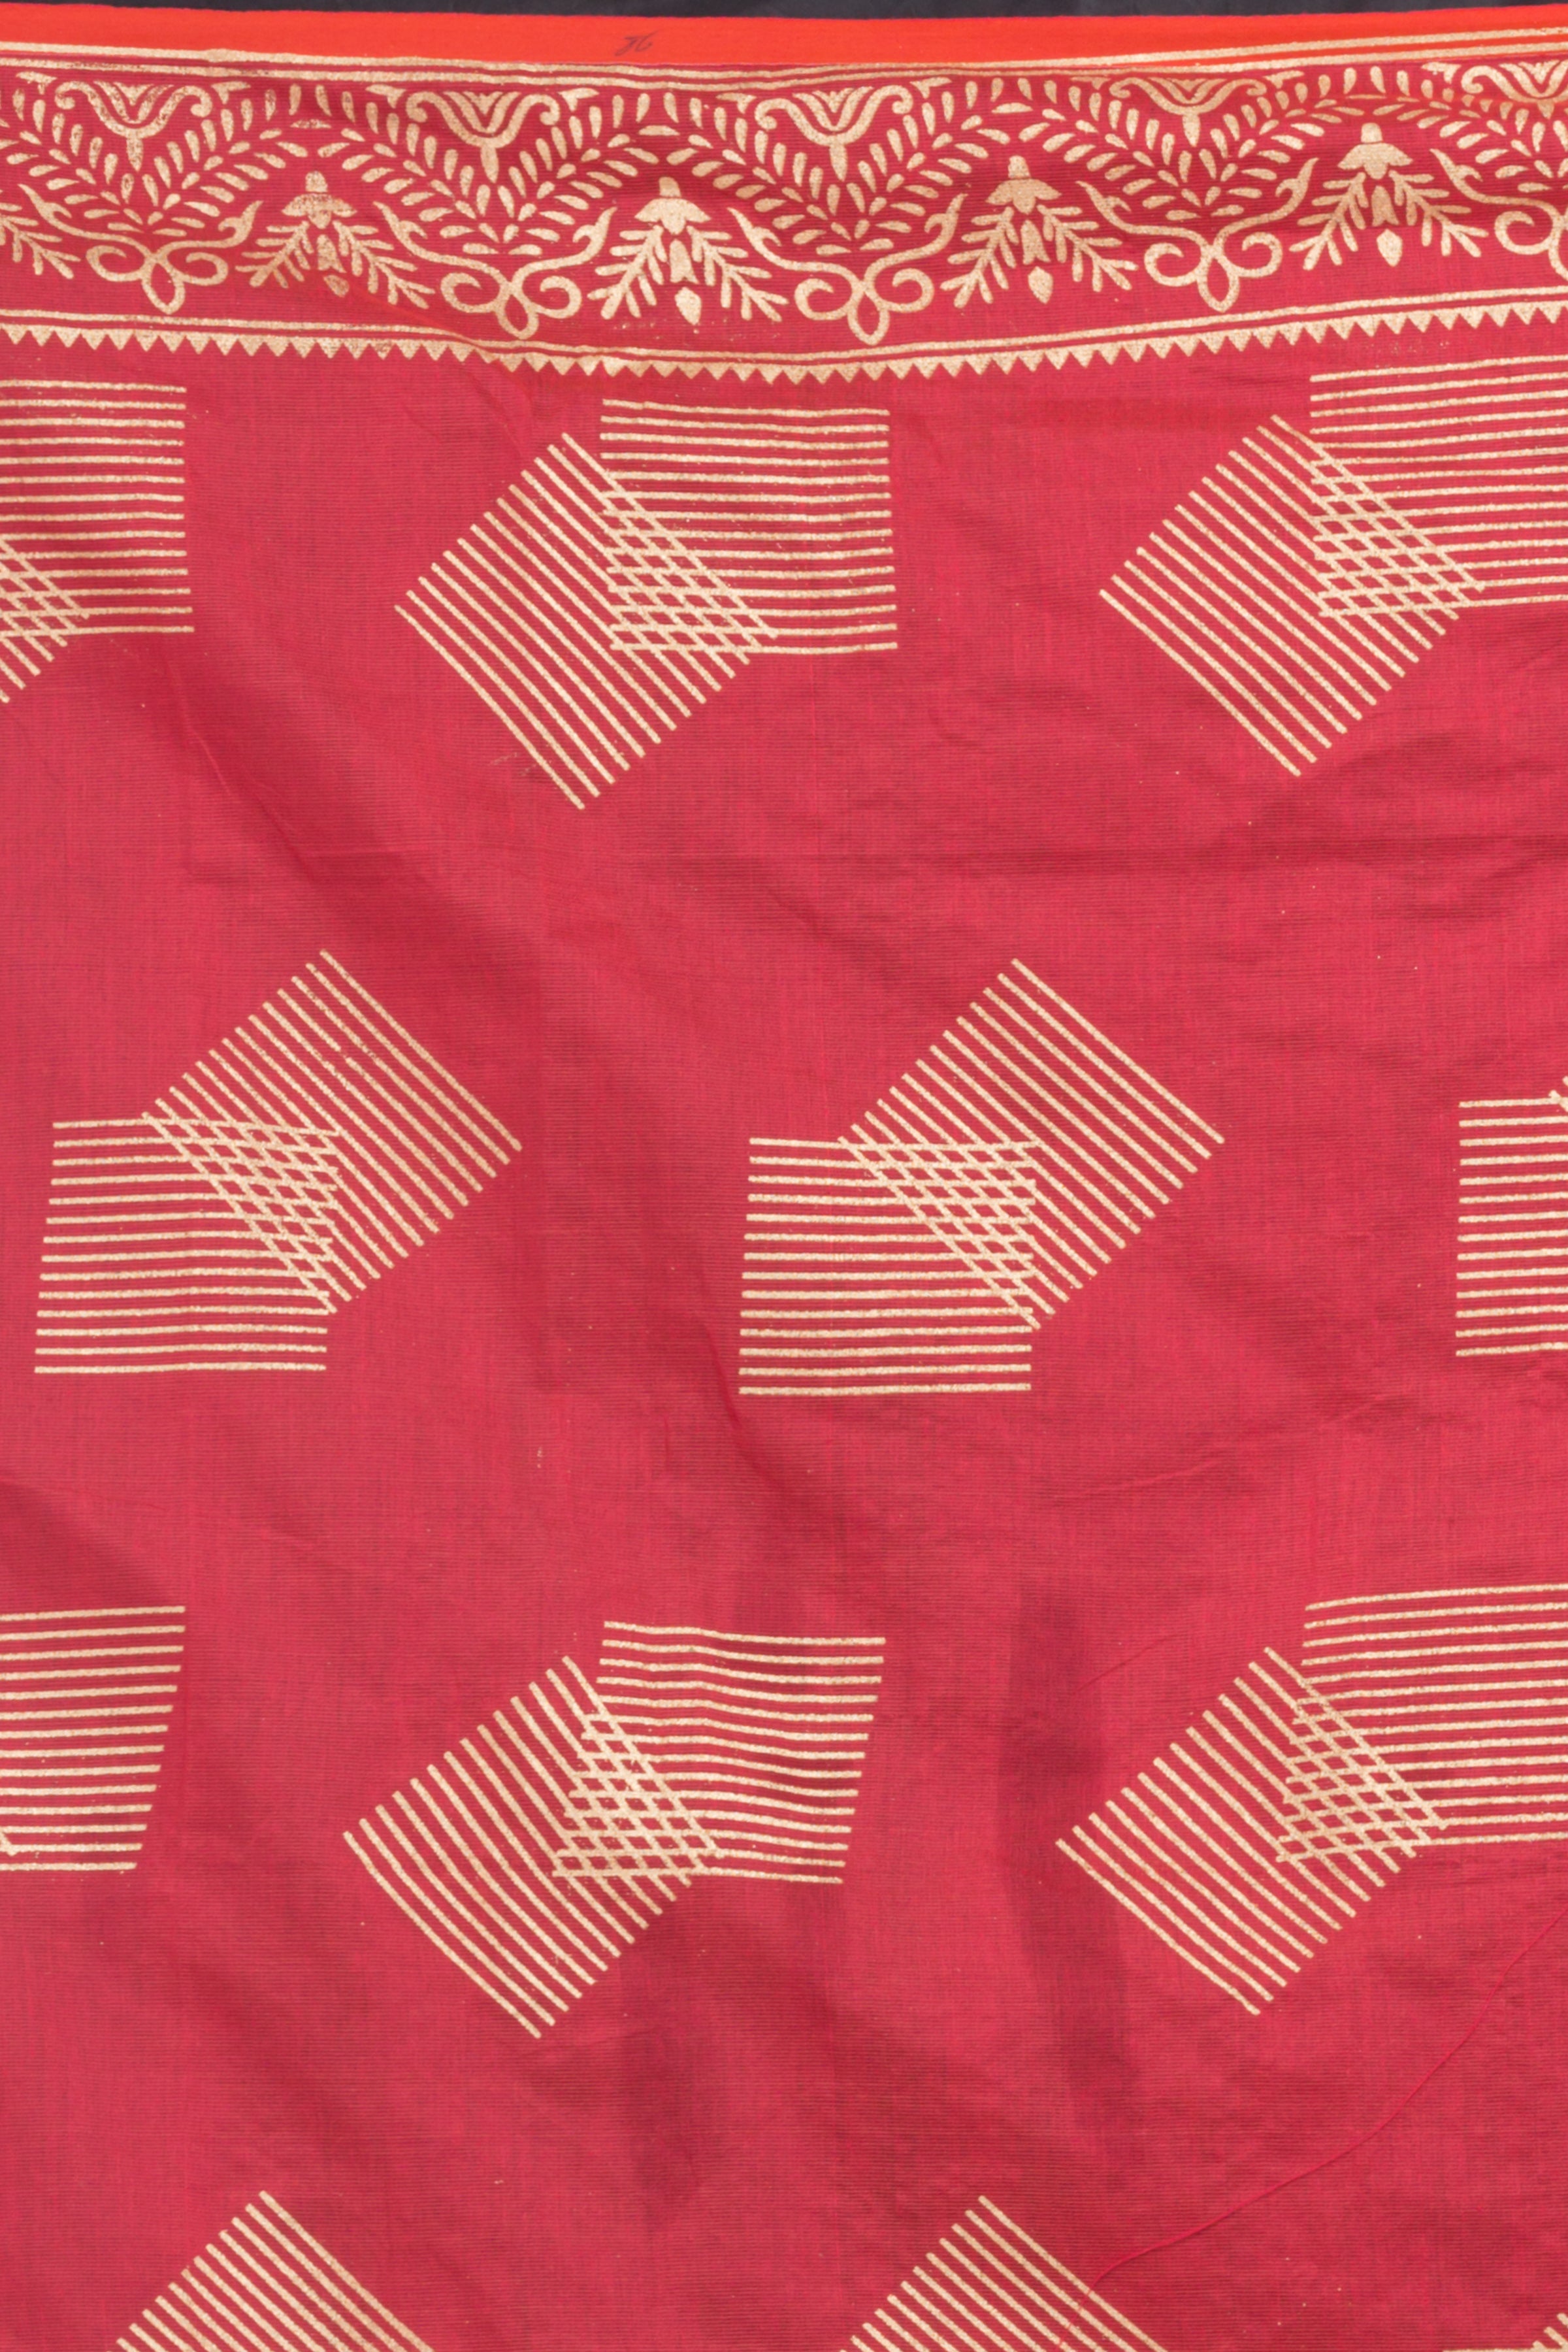 Women's Tometa Red Hand Woven Cotton Silk Printed Saree - Piyari Fashion